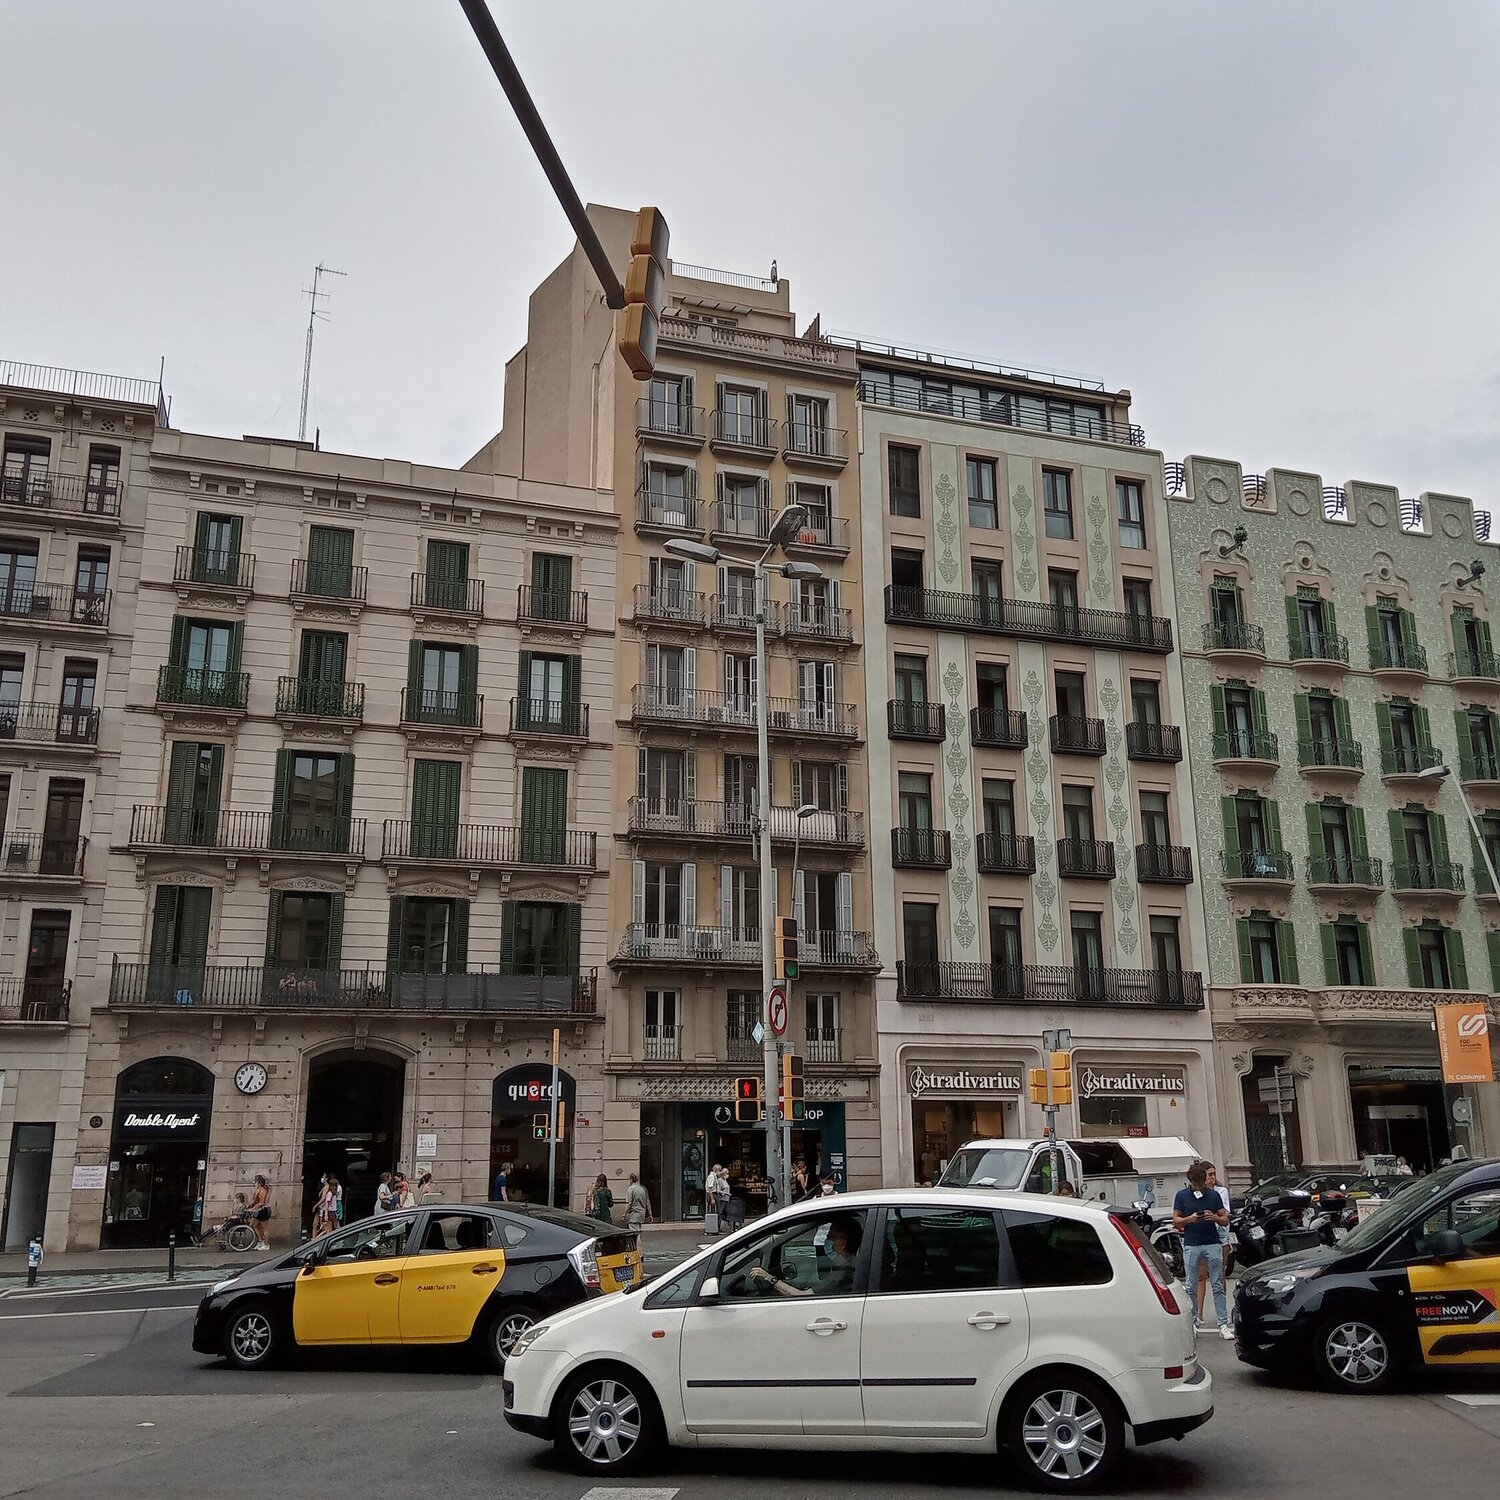 Транспорт в Барселоне: все об автобусах, трамваях, метро, фуникулерах и велосипедах